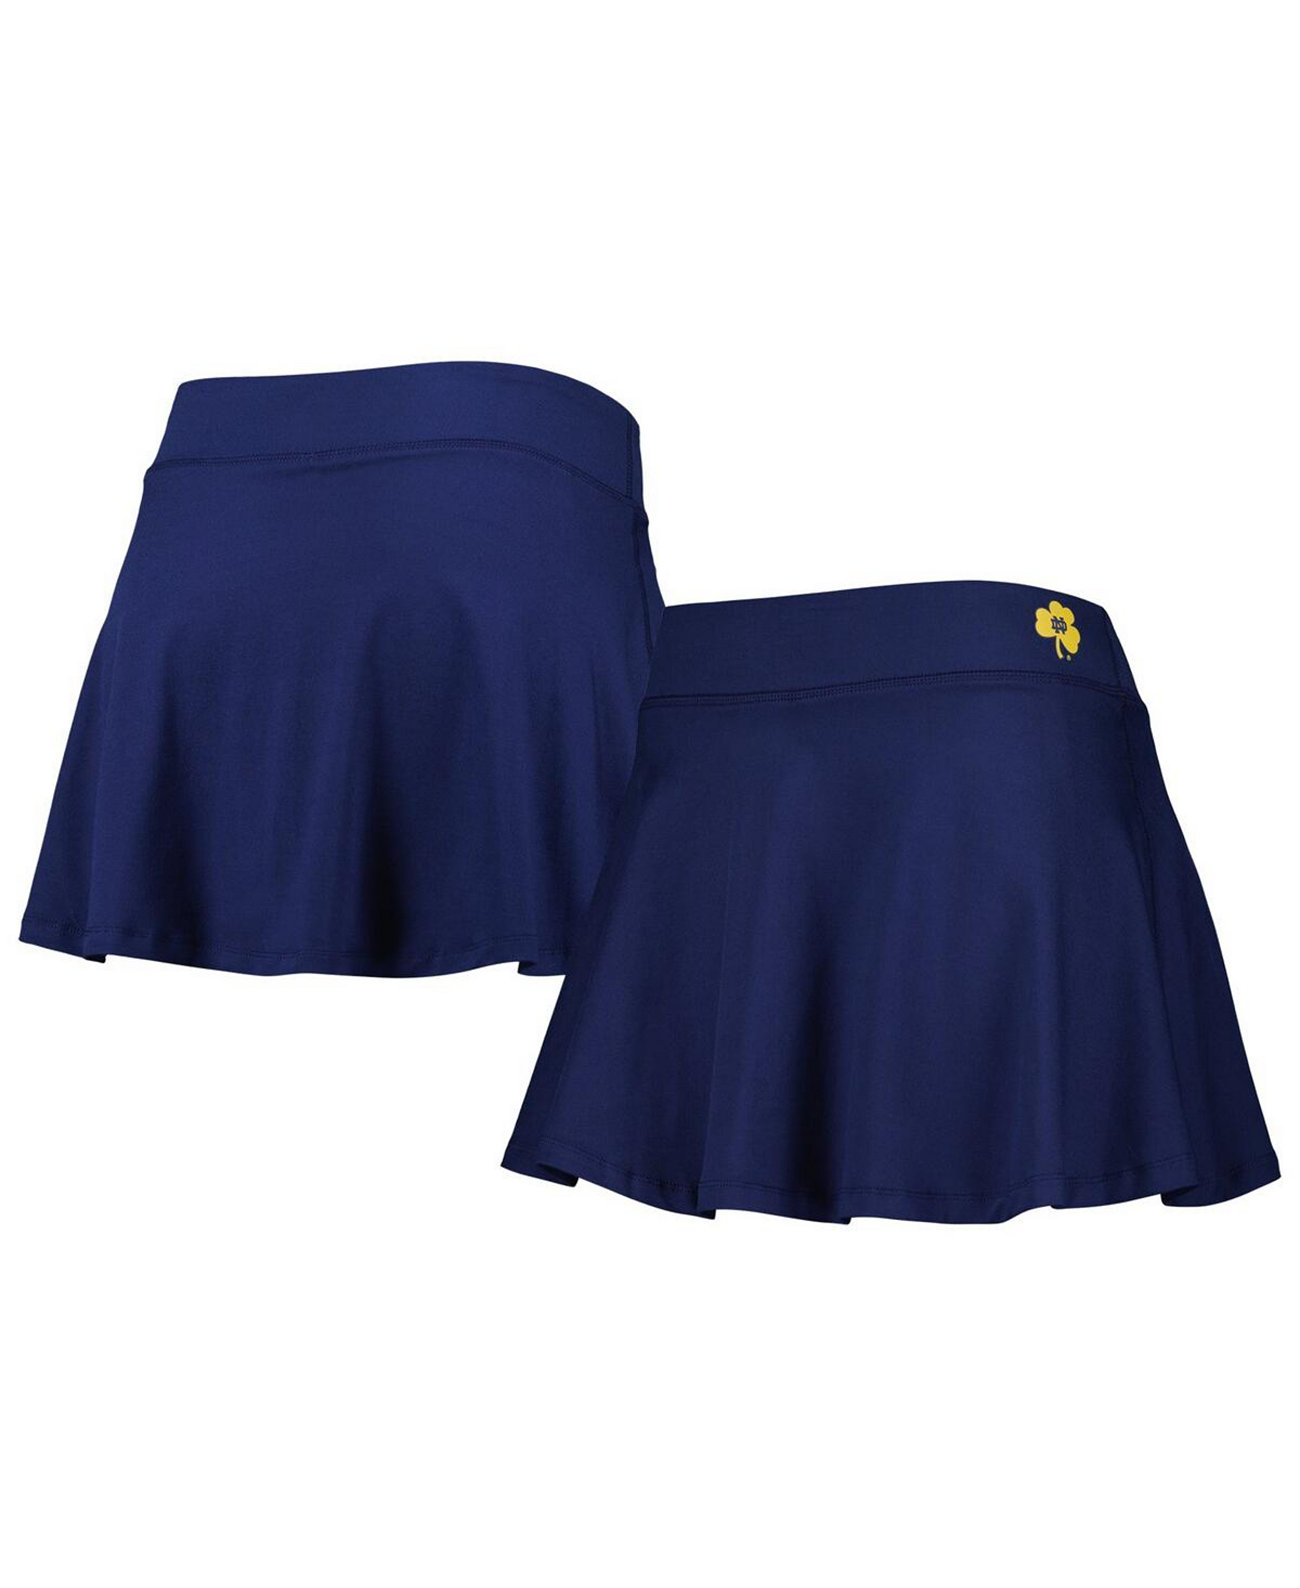 Женская темно-синяя струящаяся юбка Notre Dame Fighting Irish ZooZatz